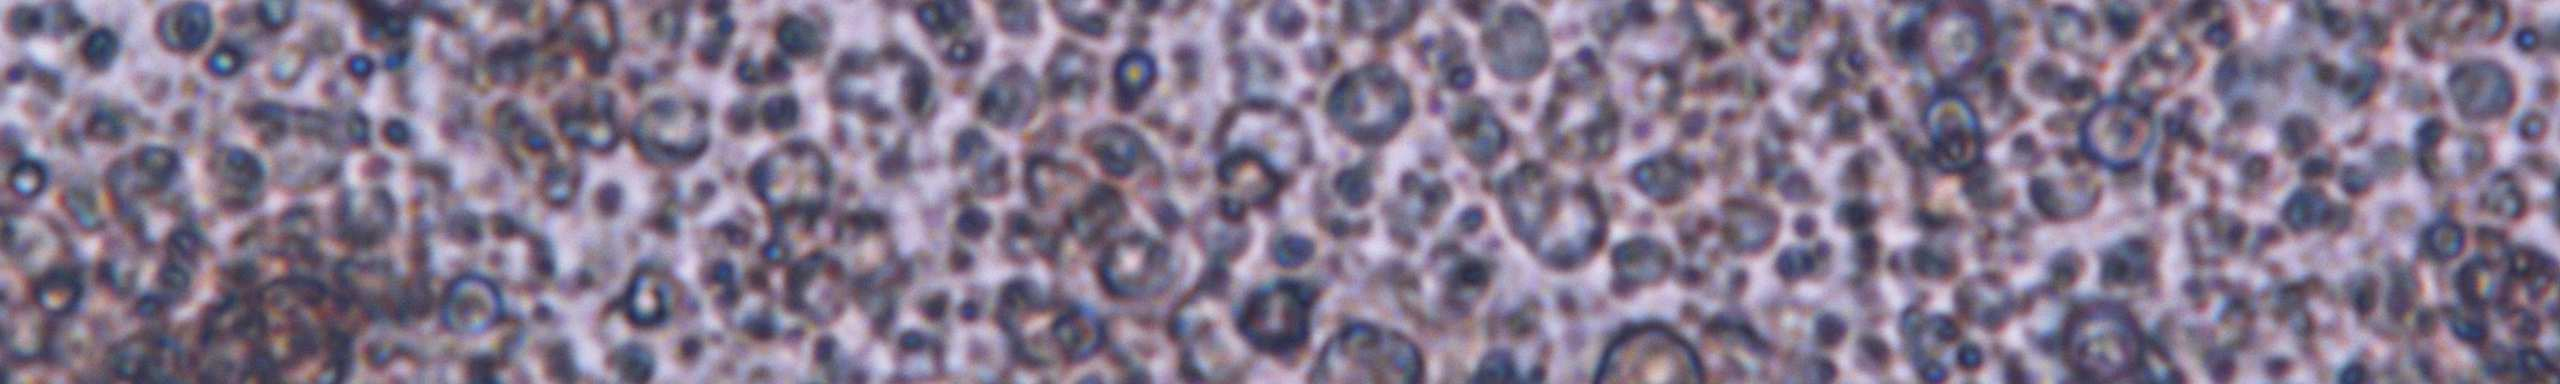 Ottenimento e mantenimento in vitro di una linea cellulare di Apis mellifera (al momento non ancora disponibile) per la diagnostica delle principali